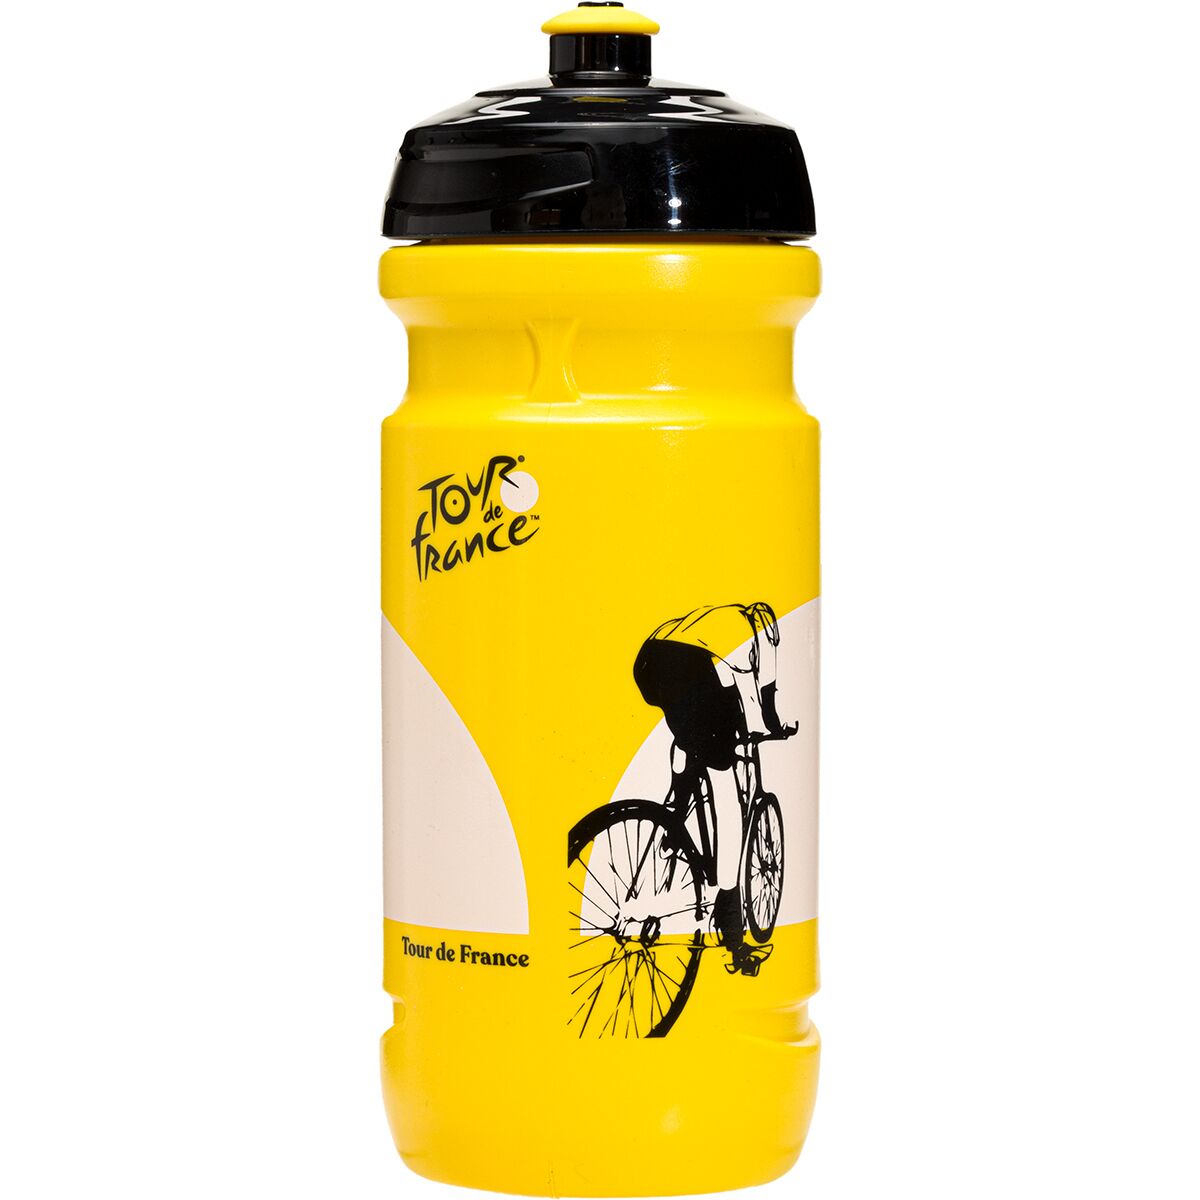 Tour de France Cyclist Bottle